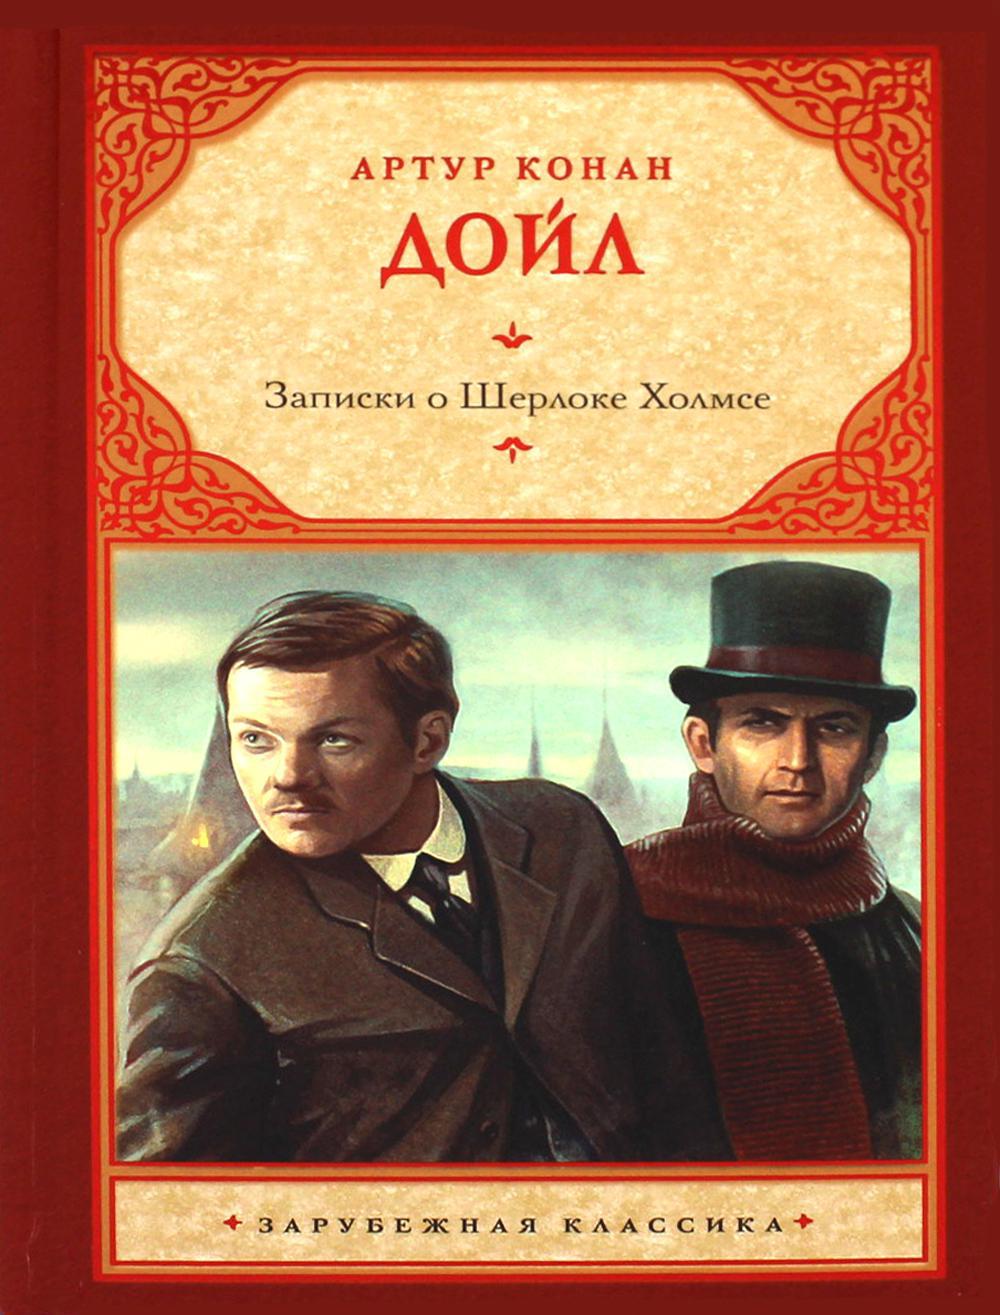 Записки о Шерлоке Холмсе: сборник